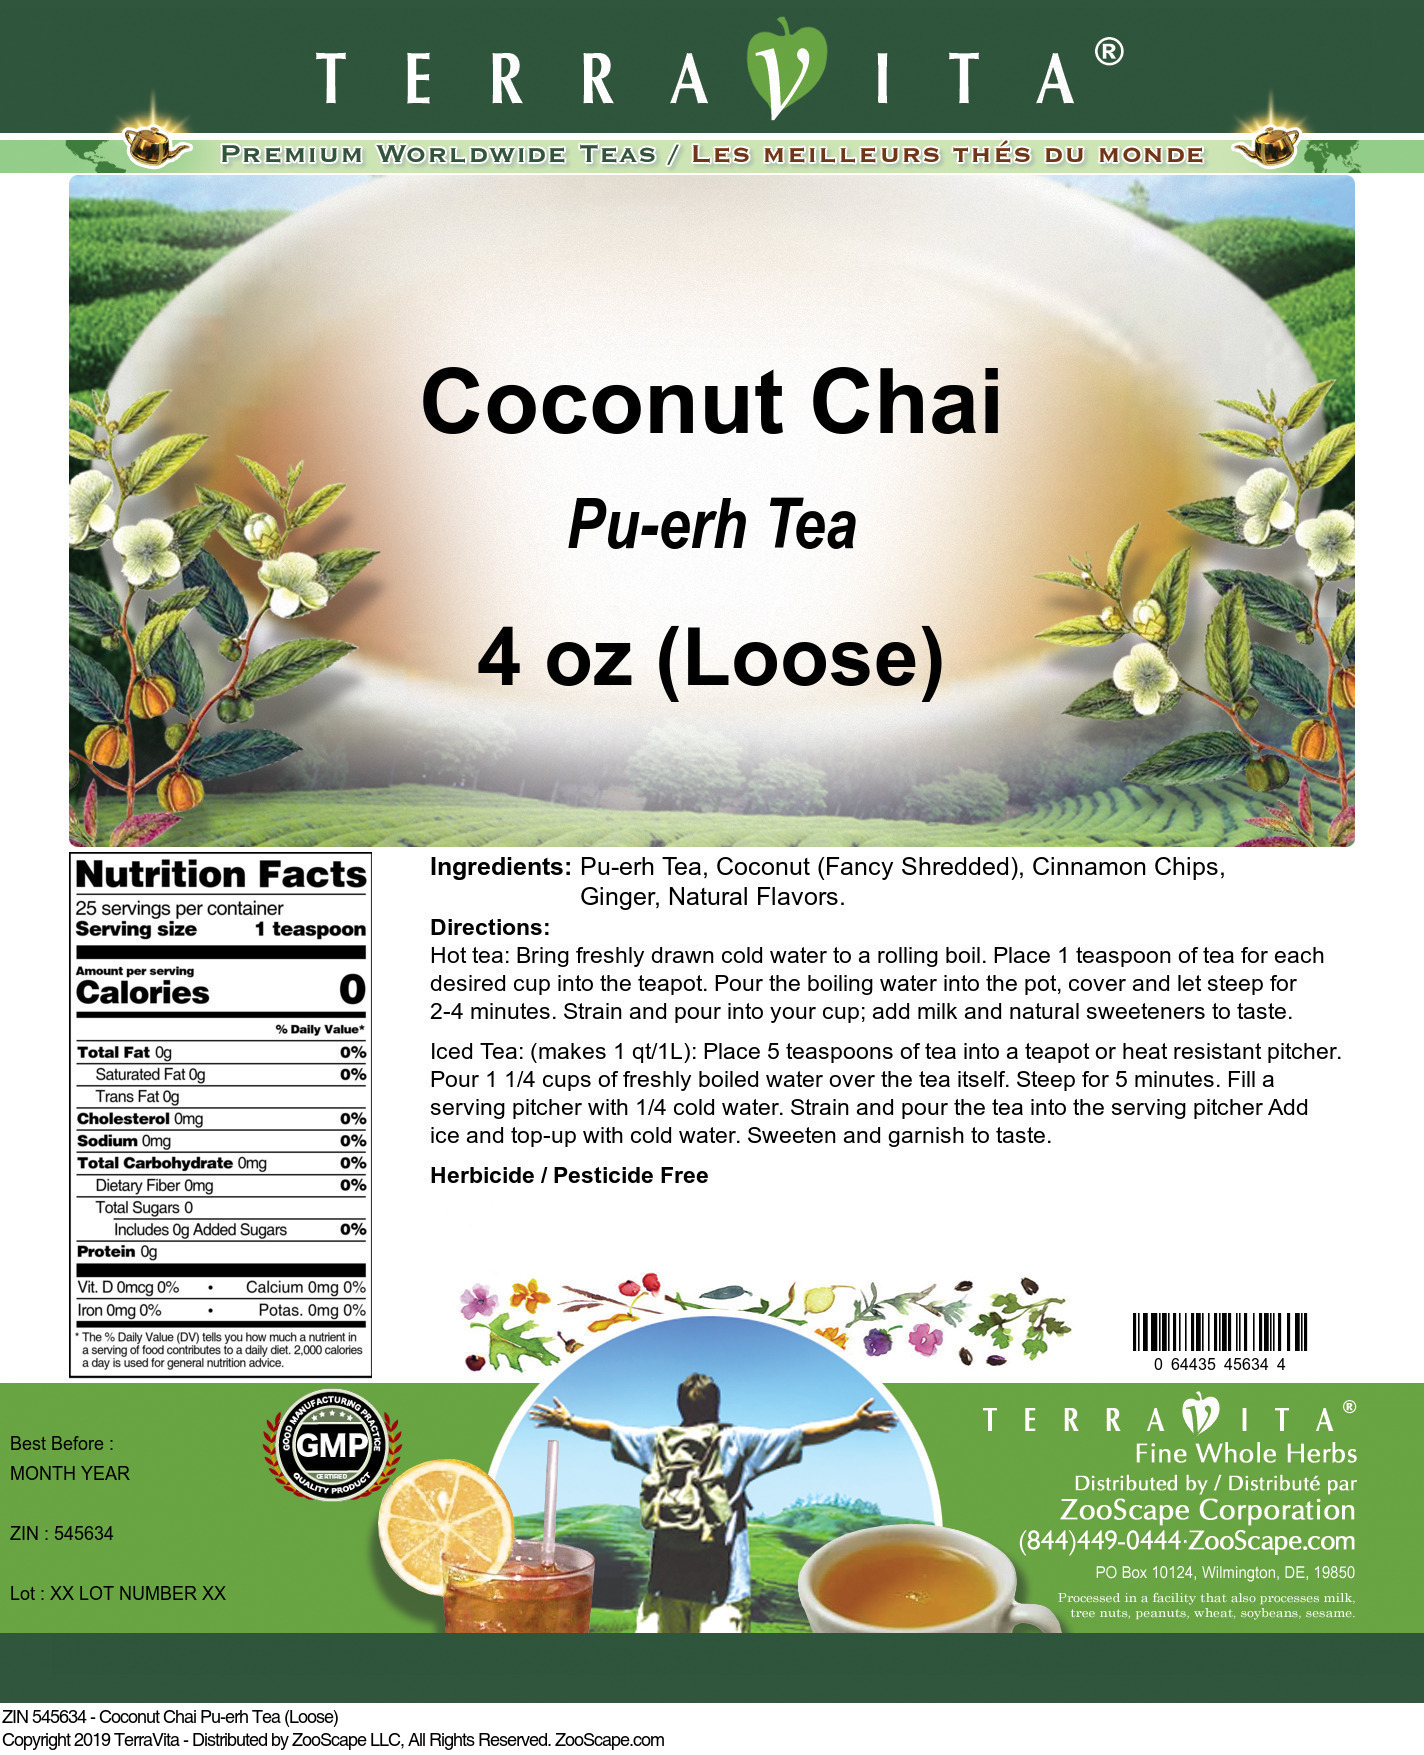 Coconut Chai Pu-erh Tea (Loose) - Label